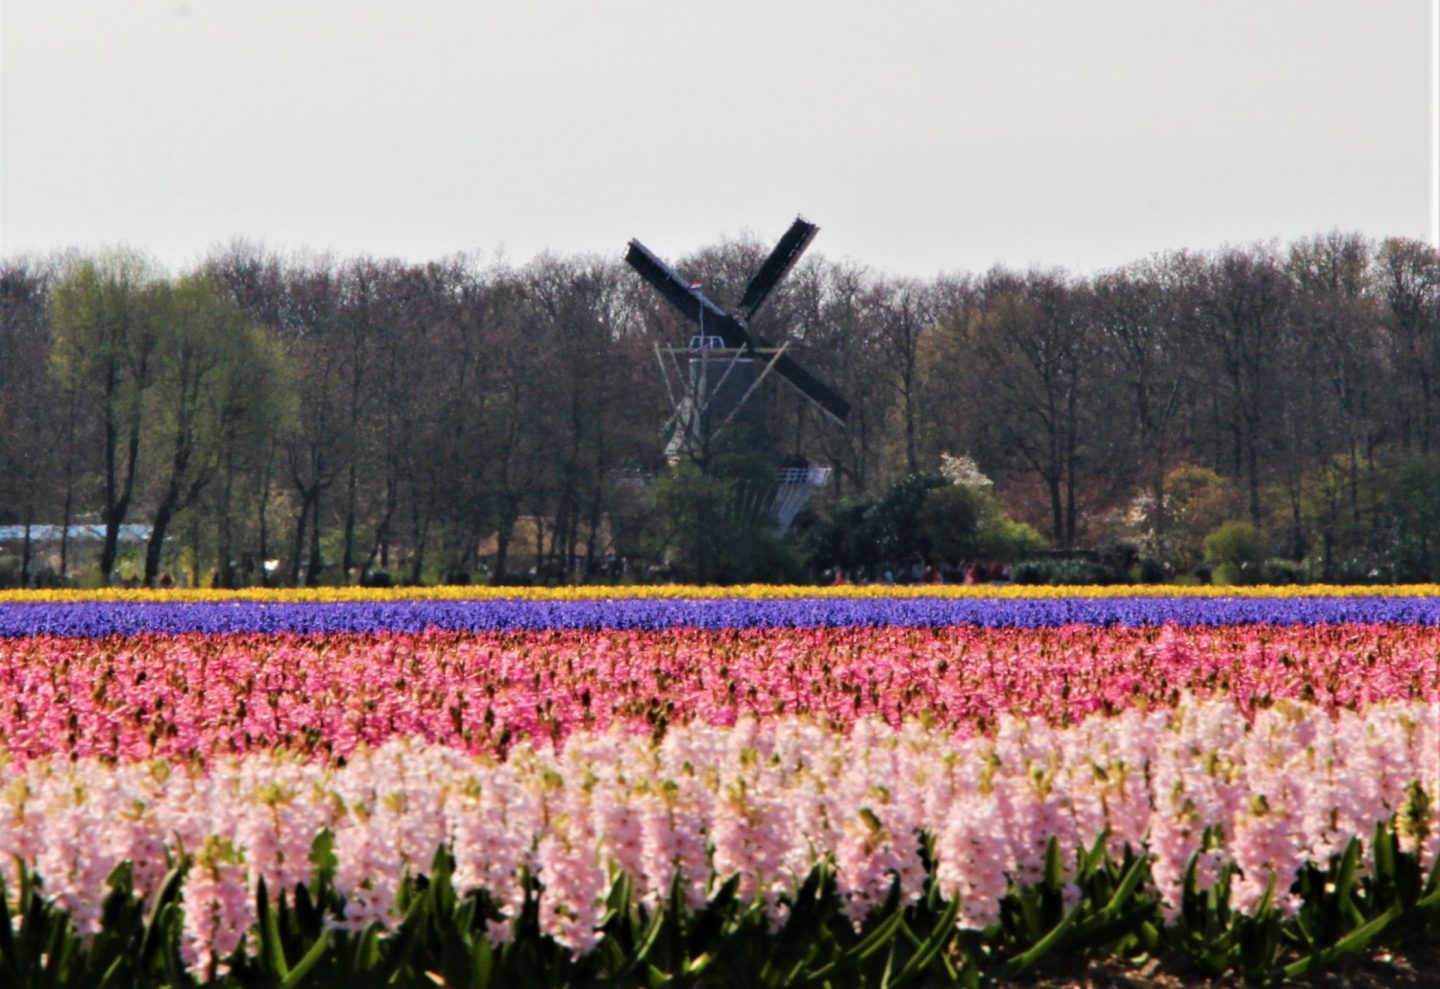 El molino de viento en Keukenhof es uno de los pocos que se pueden ver entre los campos de jacintos y tulipanes.